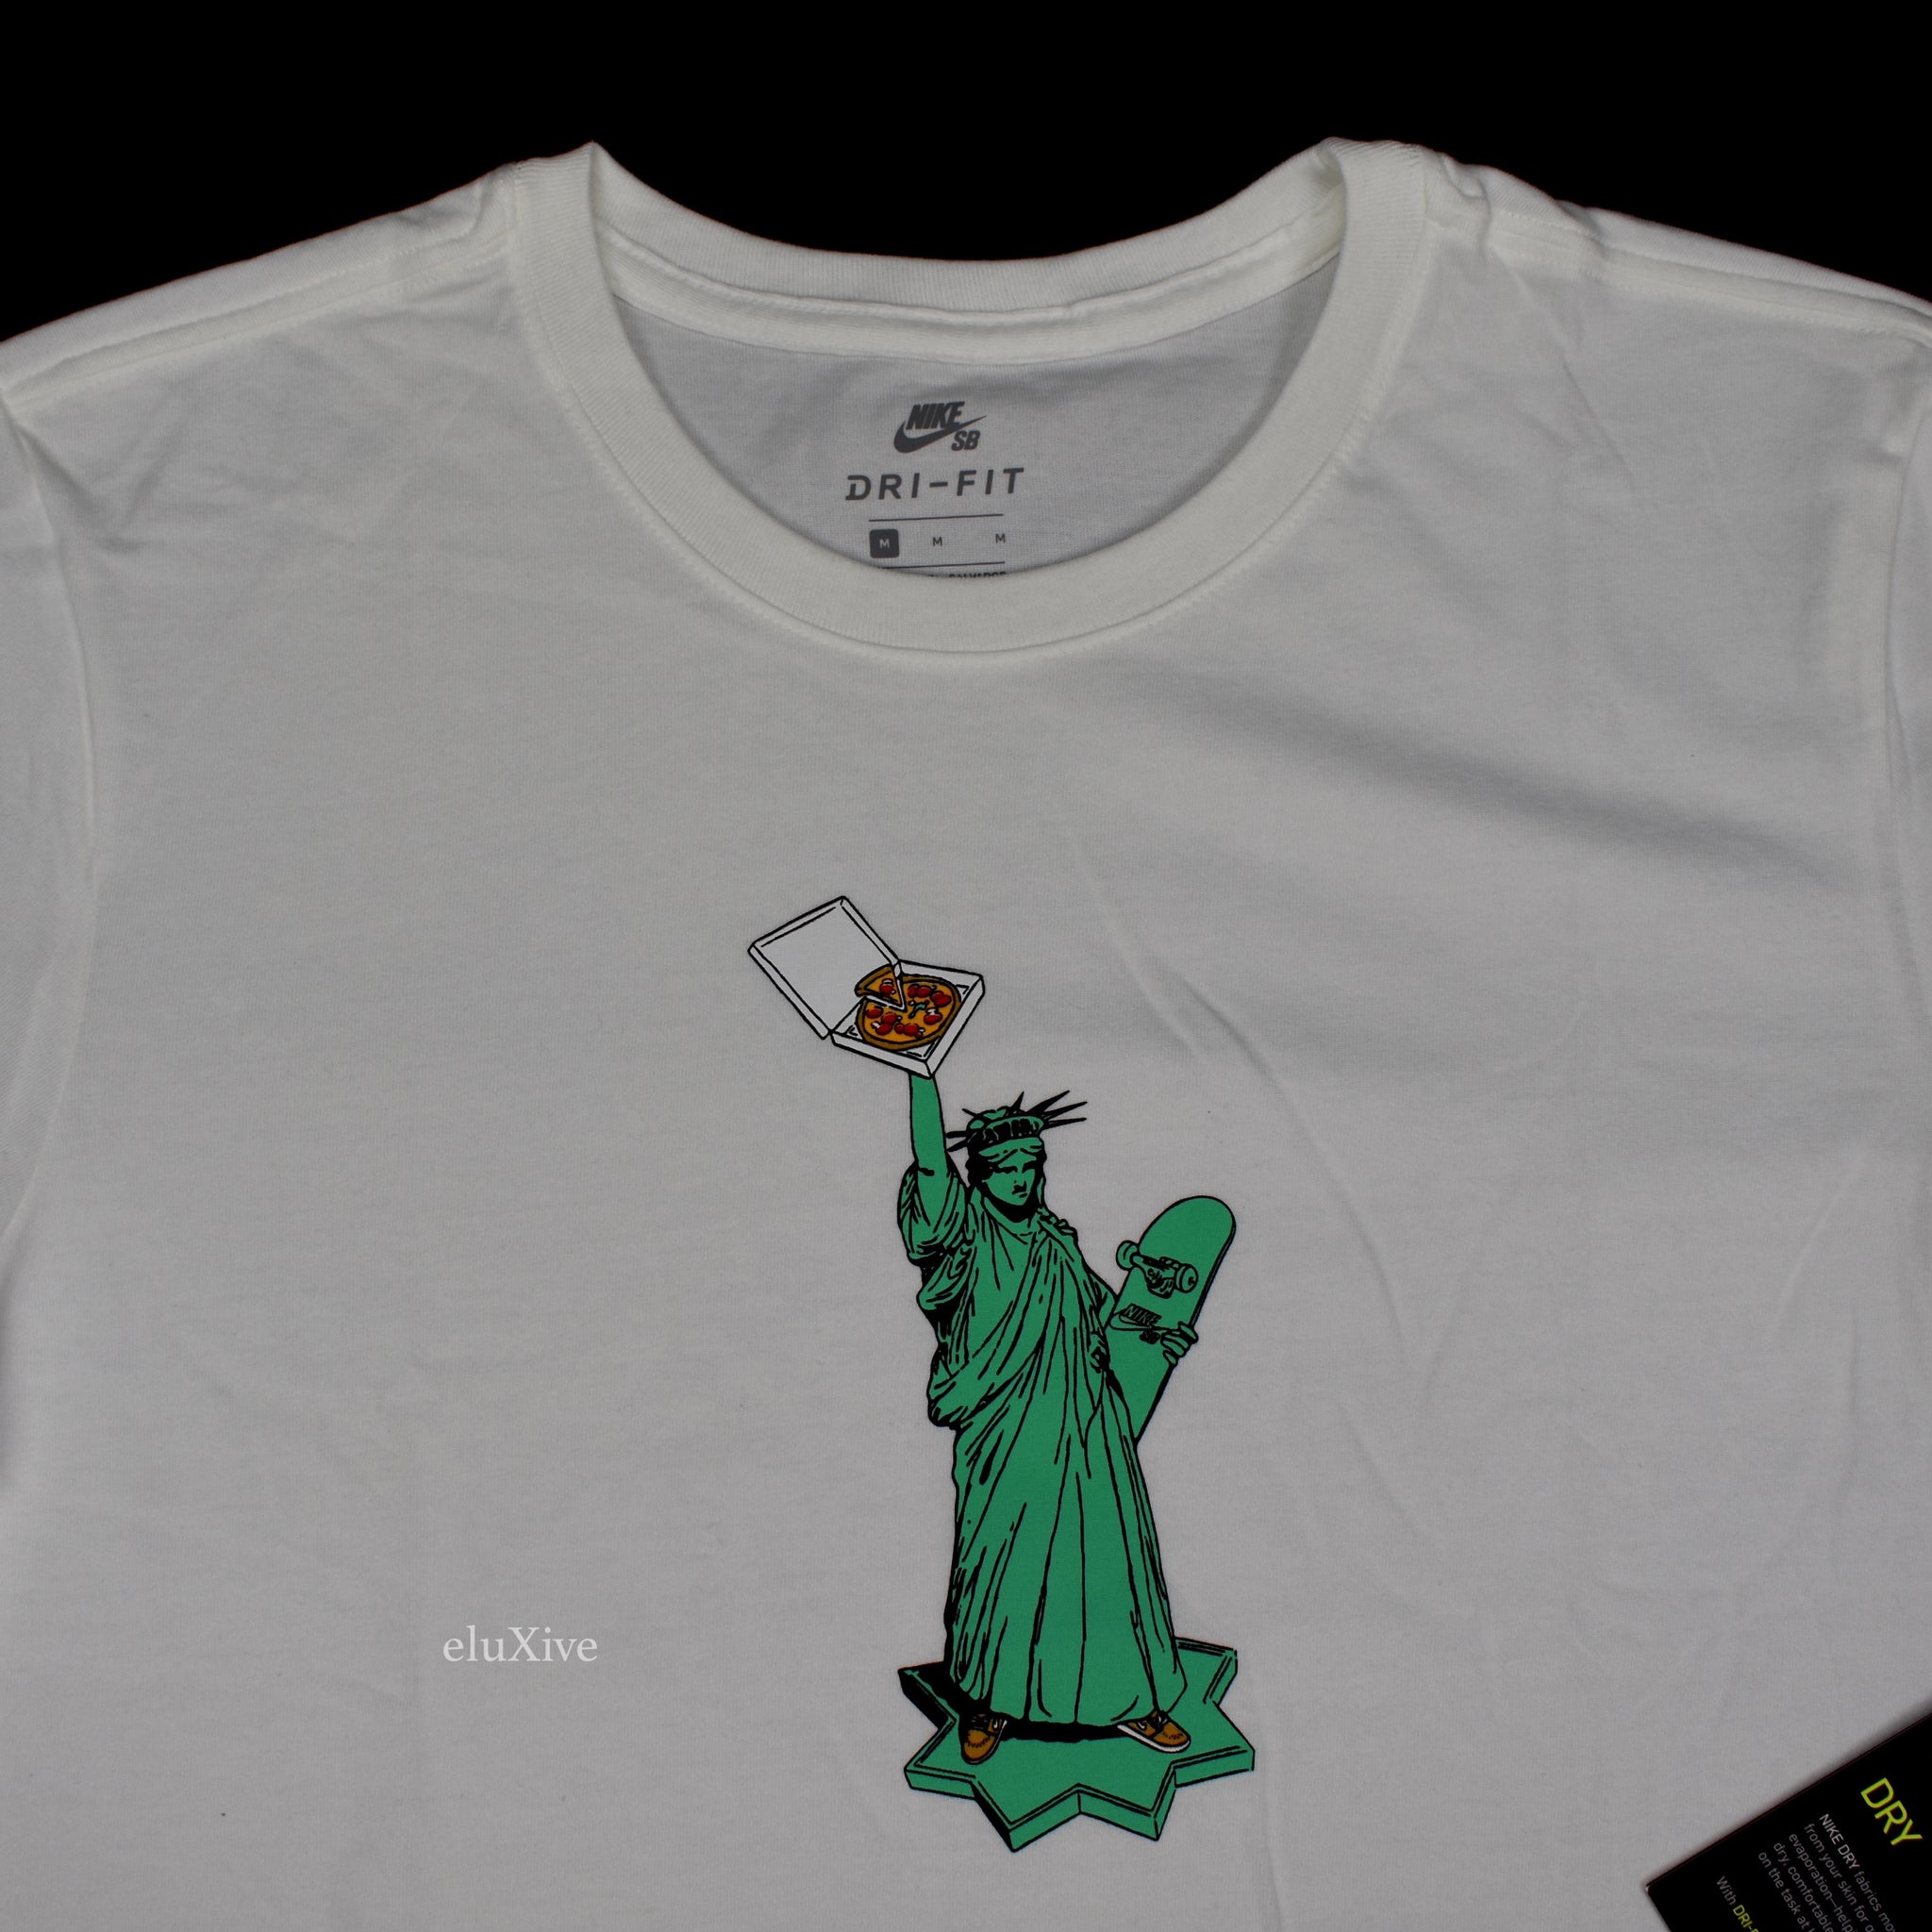 statue of liberty nike shirt